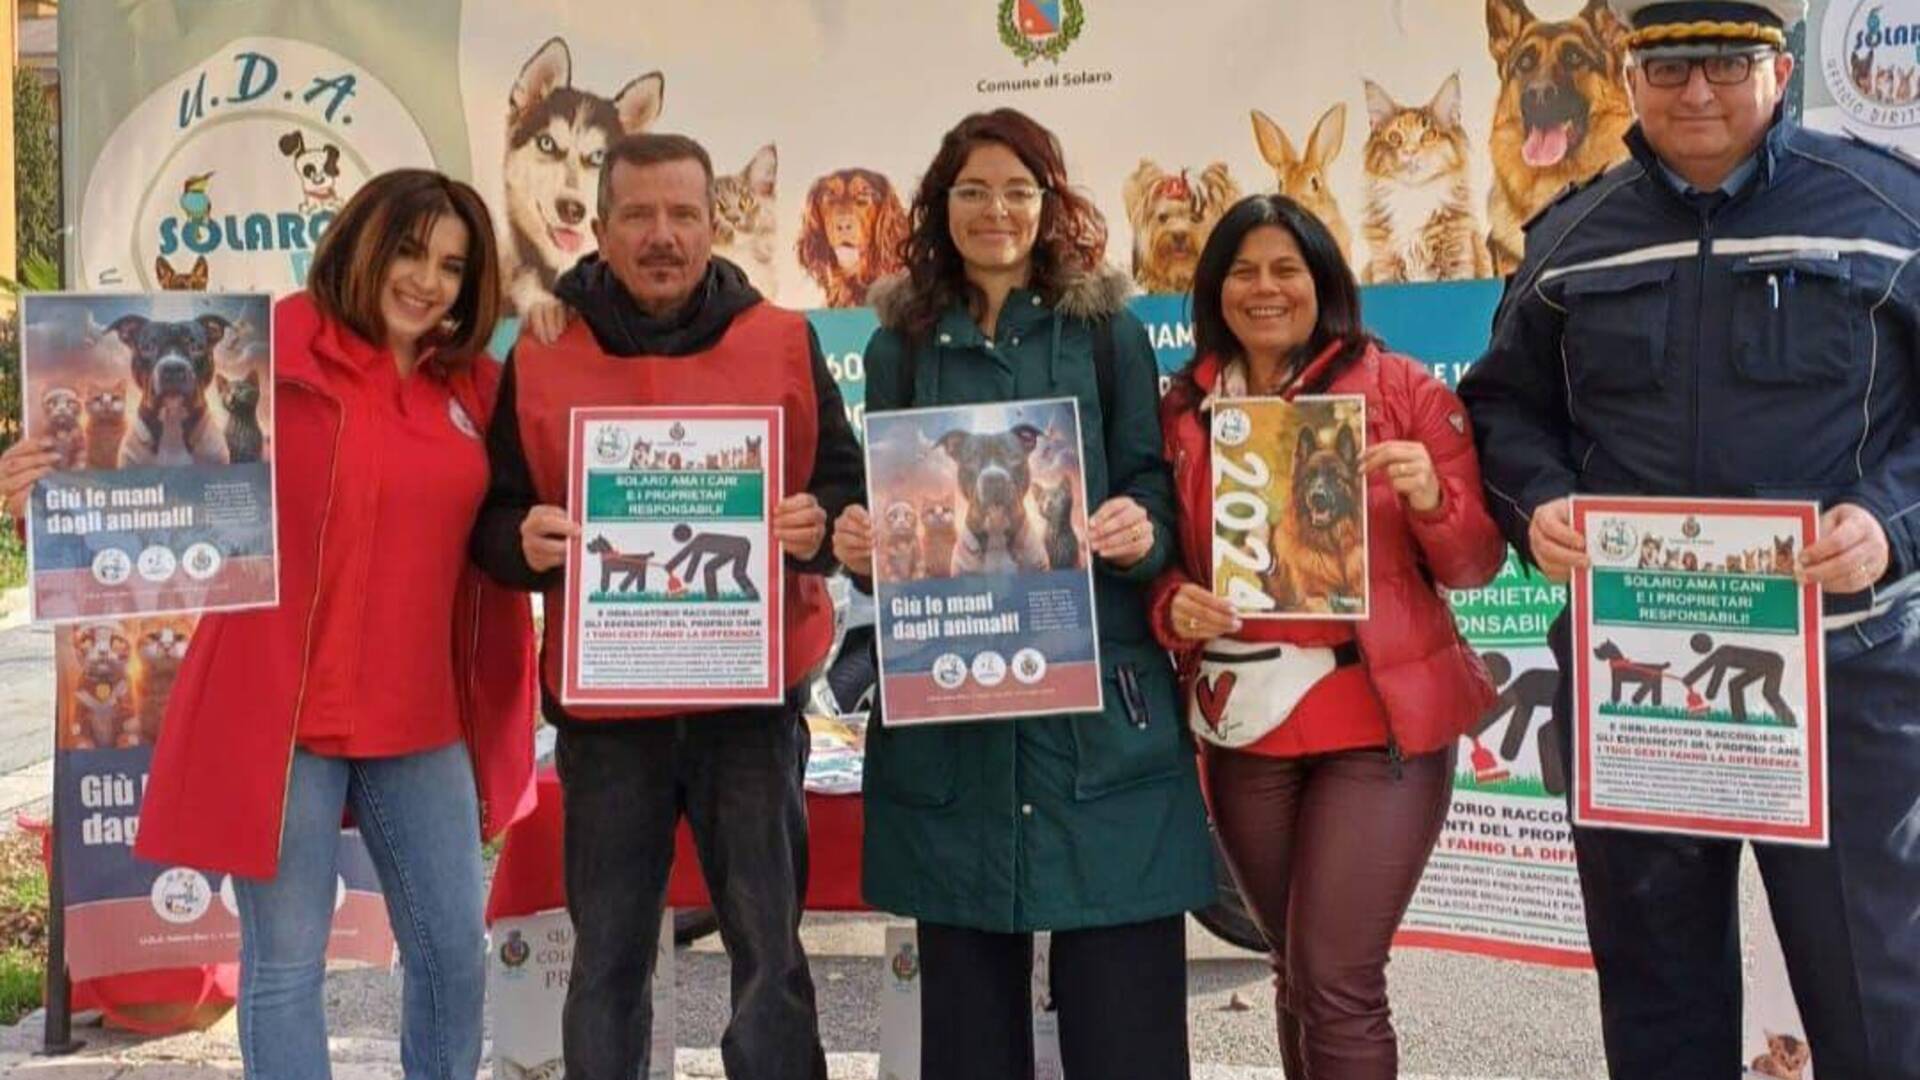 Solaro, la sindaca Moretti alla campagna di sensibilizzazione contro le deiezioni canine